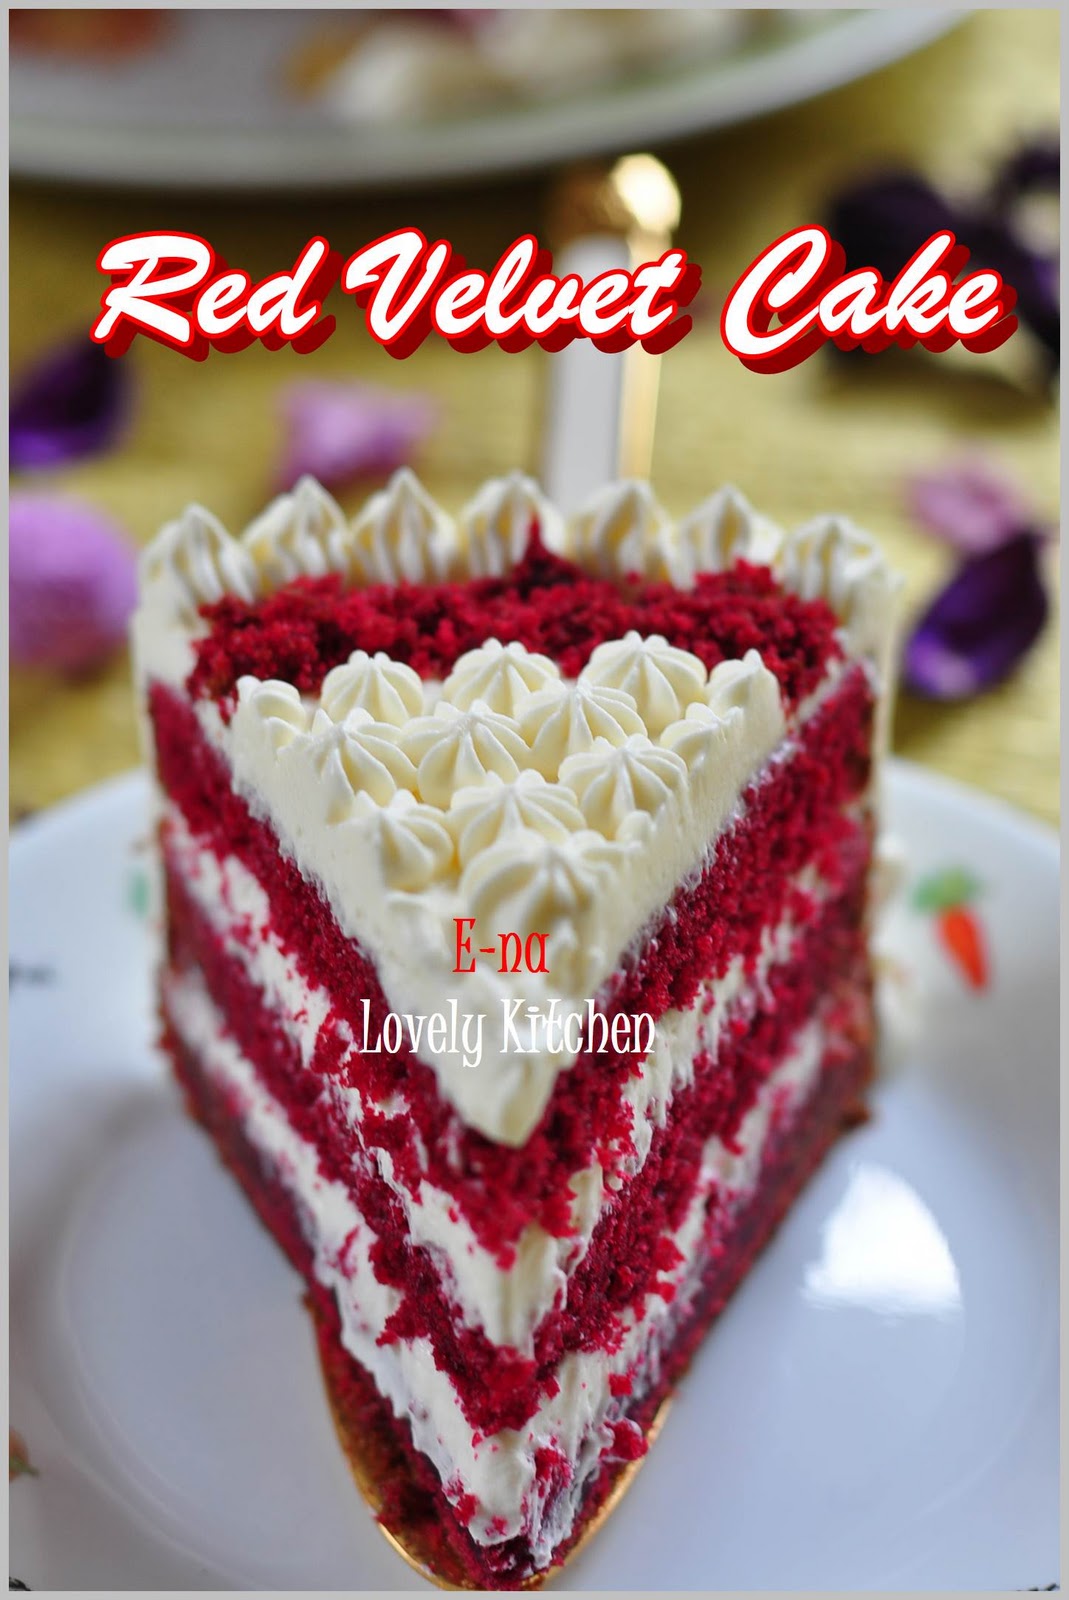 E-NA LOVELY KITCHEN ^_^: Tempahan Khas Red Velvet Cake 